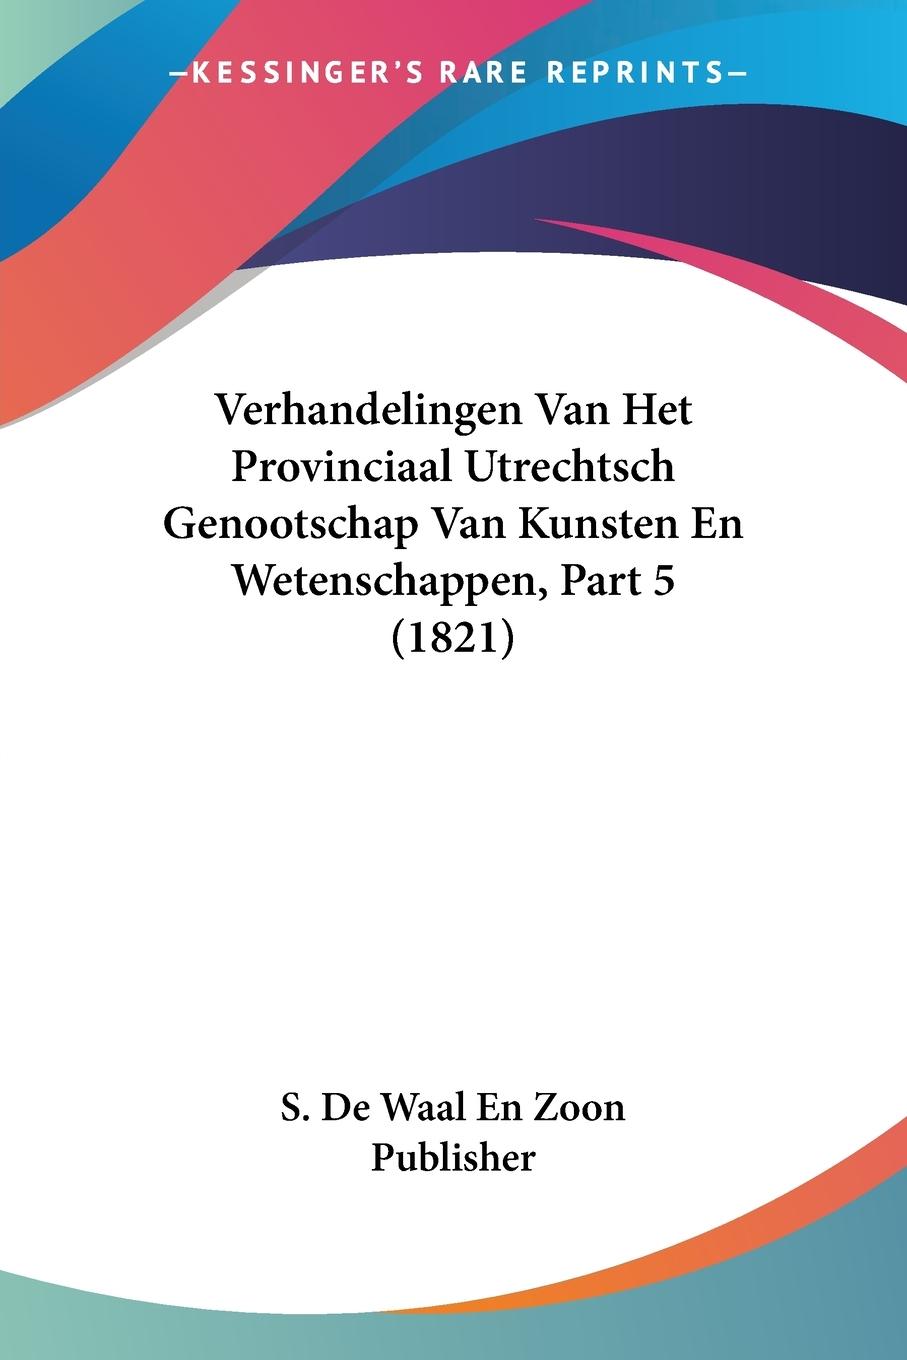 Verhandelingen Van Het Provinciaal Utrechtsch Genootschap Van Kunsten En Wetenschappen, Part 5 (1821) - S. De Waal En Zoon Publisher